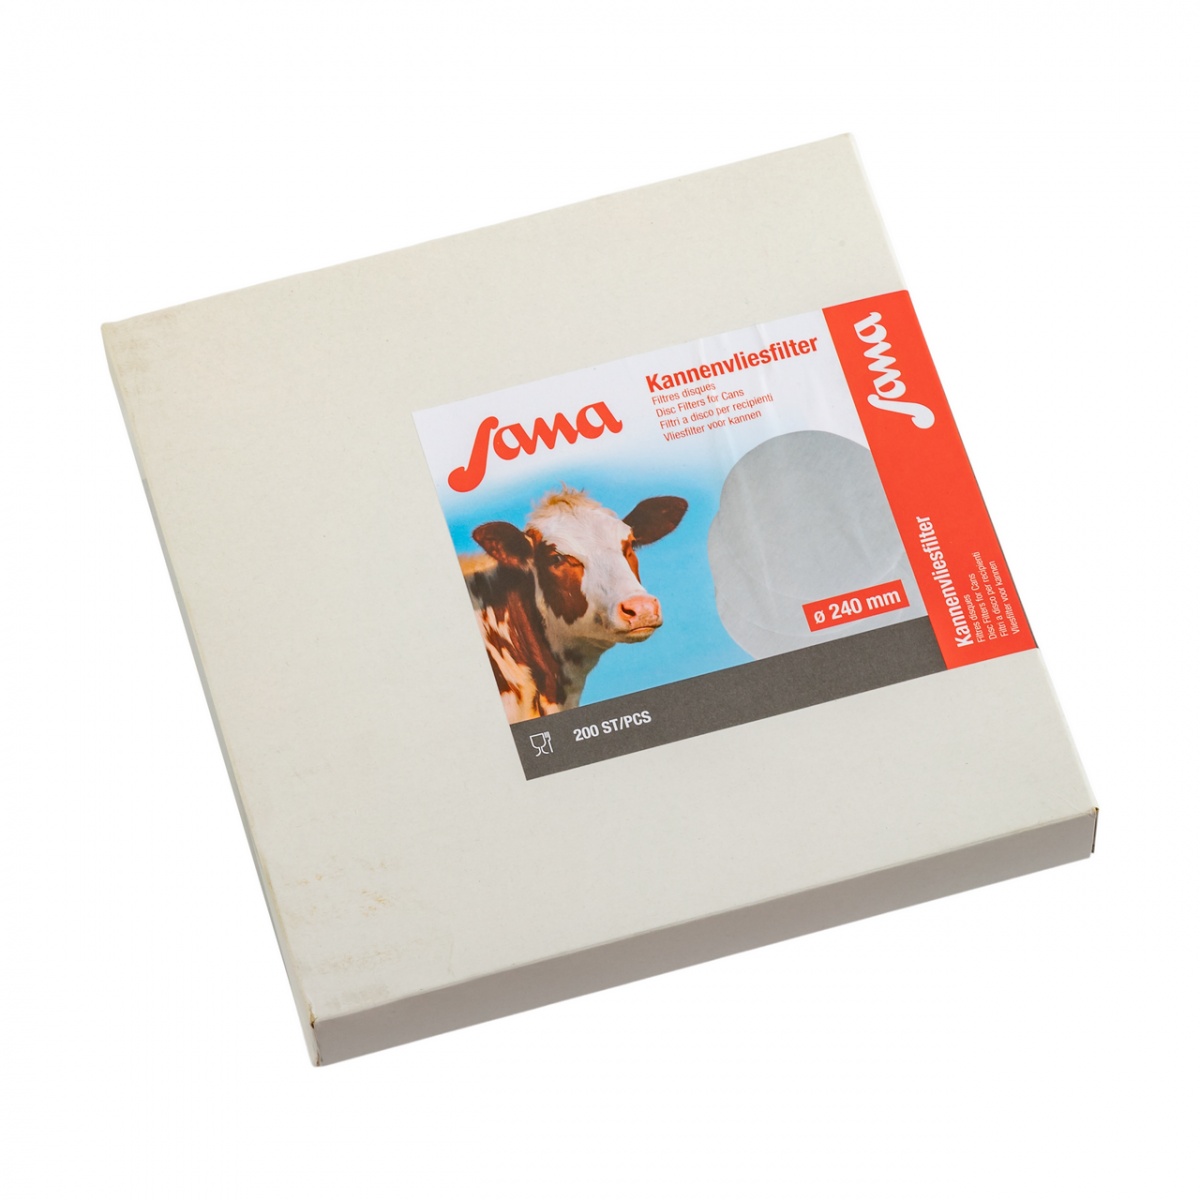 Filtru disc pentru lapte, Sana, 240 mm, 200 buc.